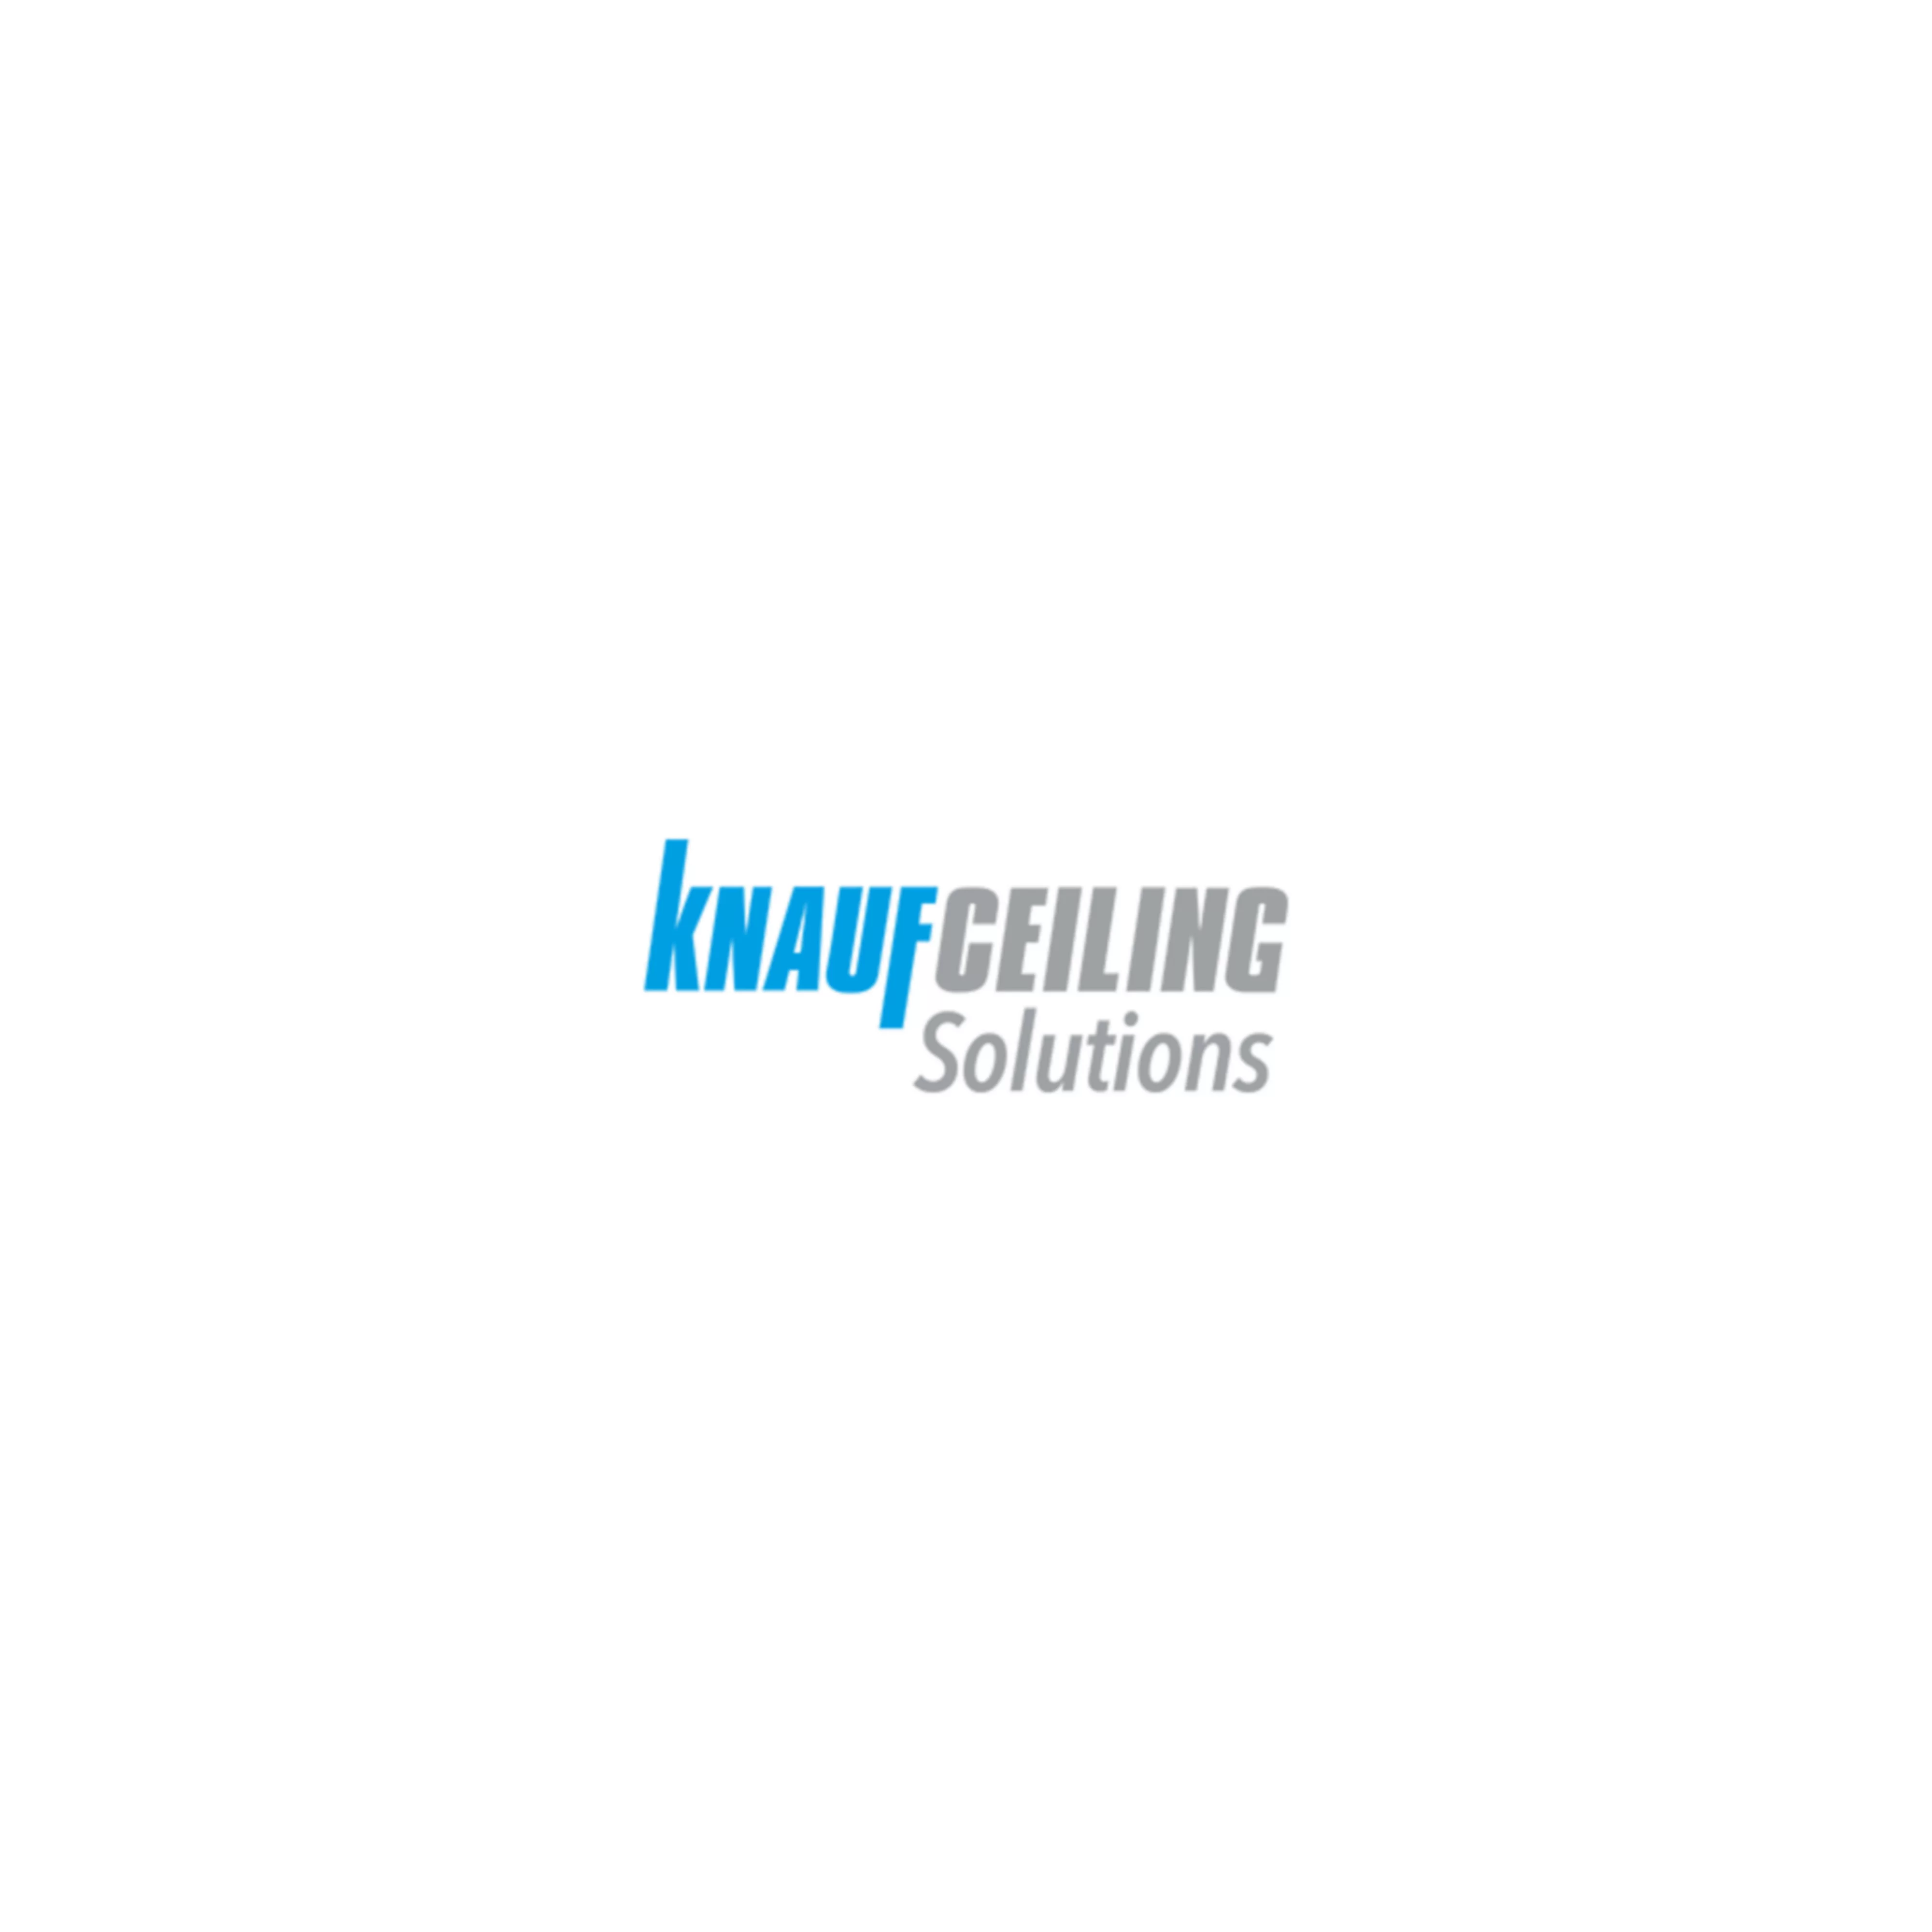 knauf-ceiling-solutions_logo-mit-hintergrund